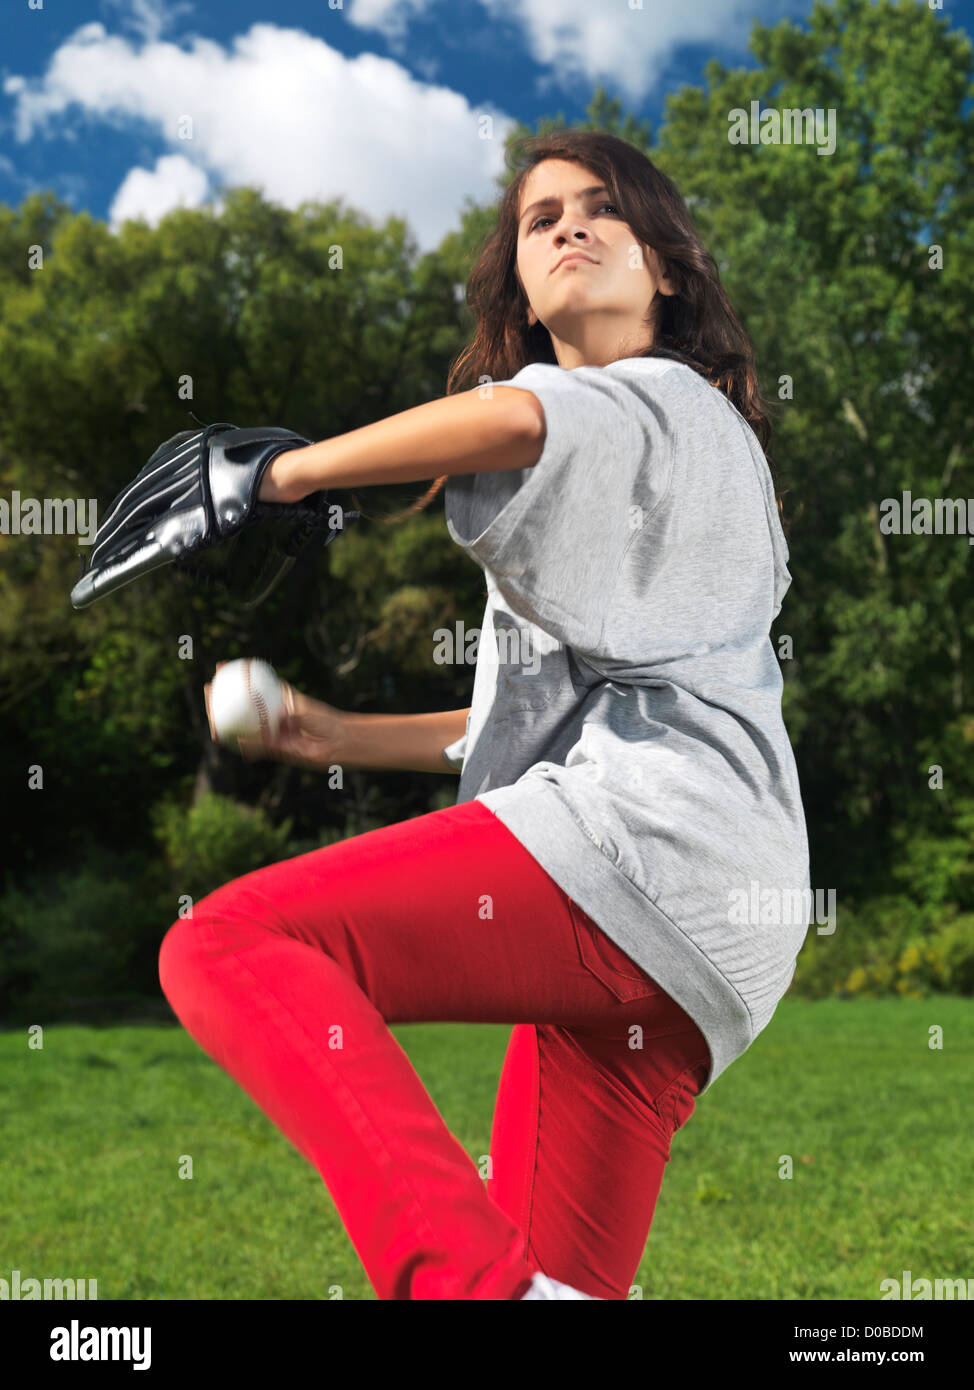 Lauffeuer eines Mädchens mit einem Handschuh Baseball, Throing eine Kugel, Aktivsommer Lebensstil zu praktizieren. Stockfoto